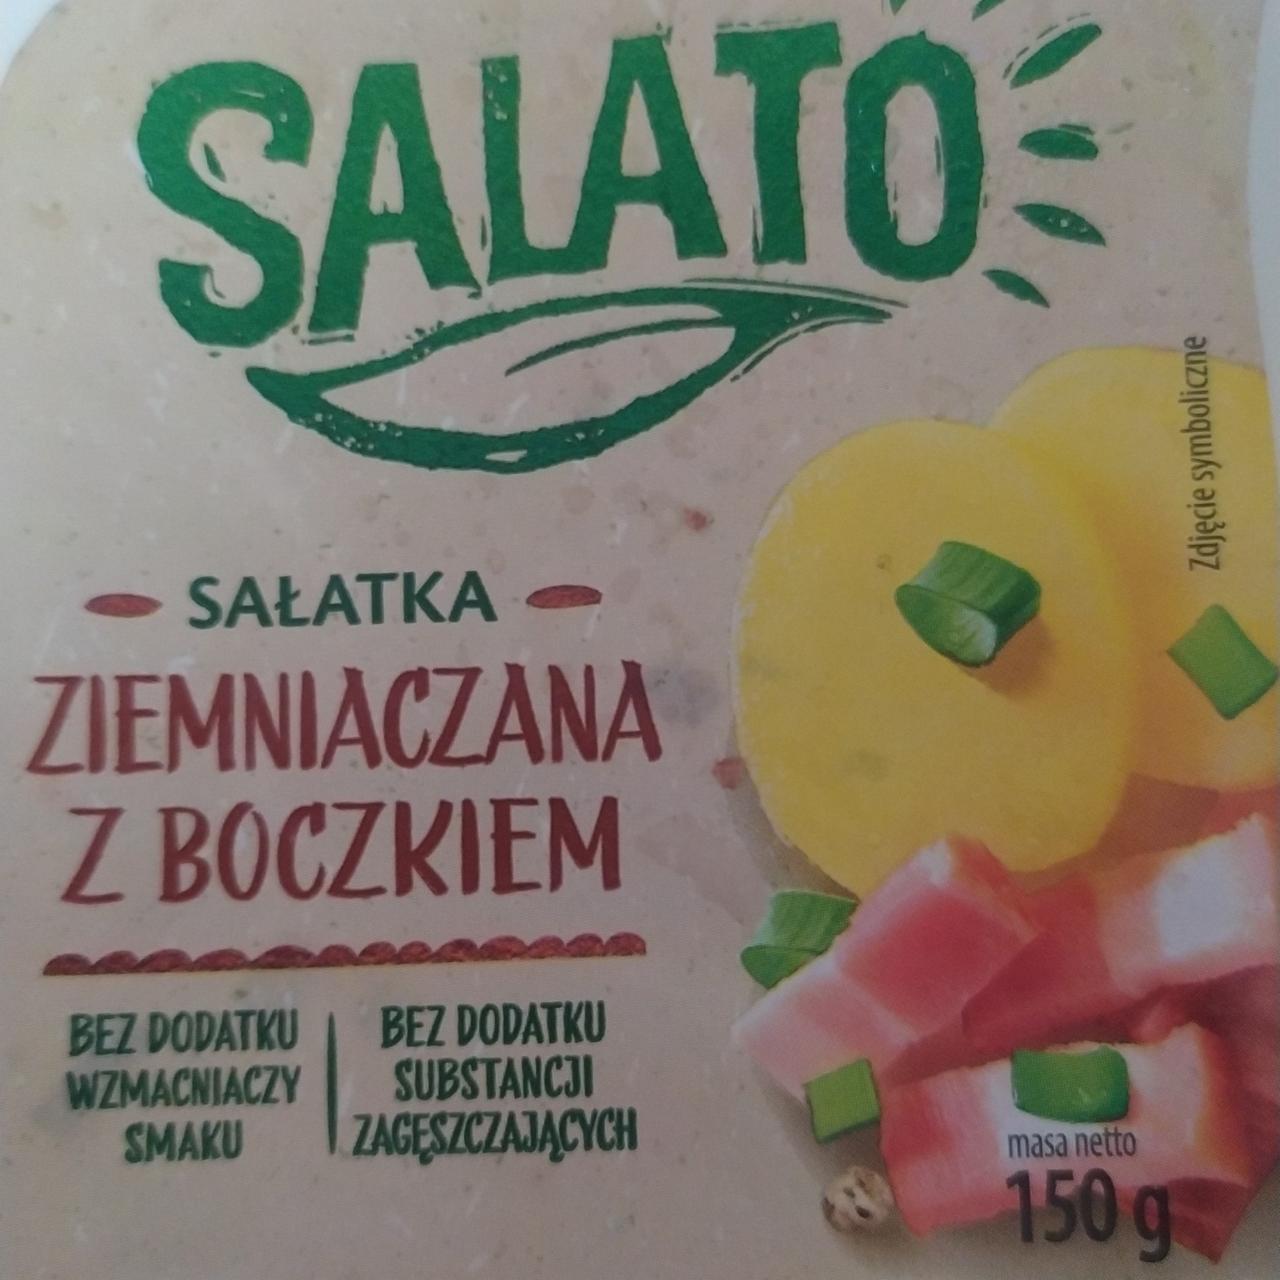 Фото - салат картофельныц с беконом Salato